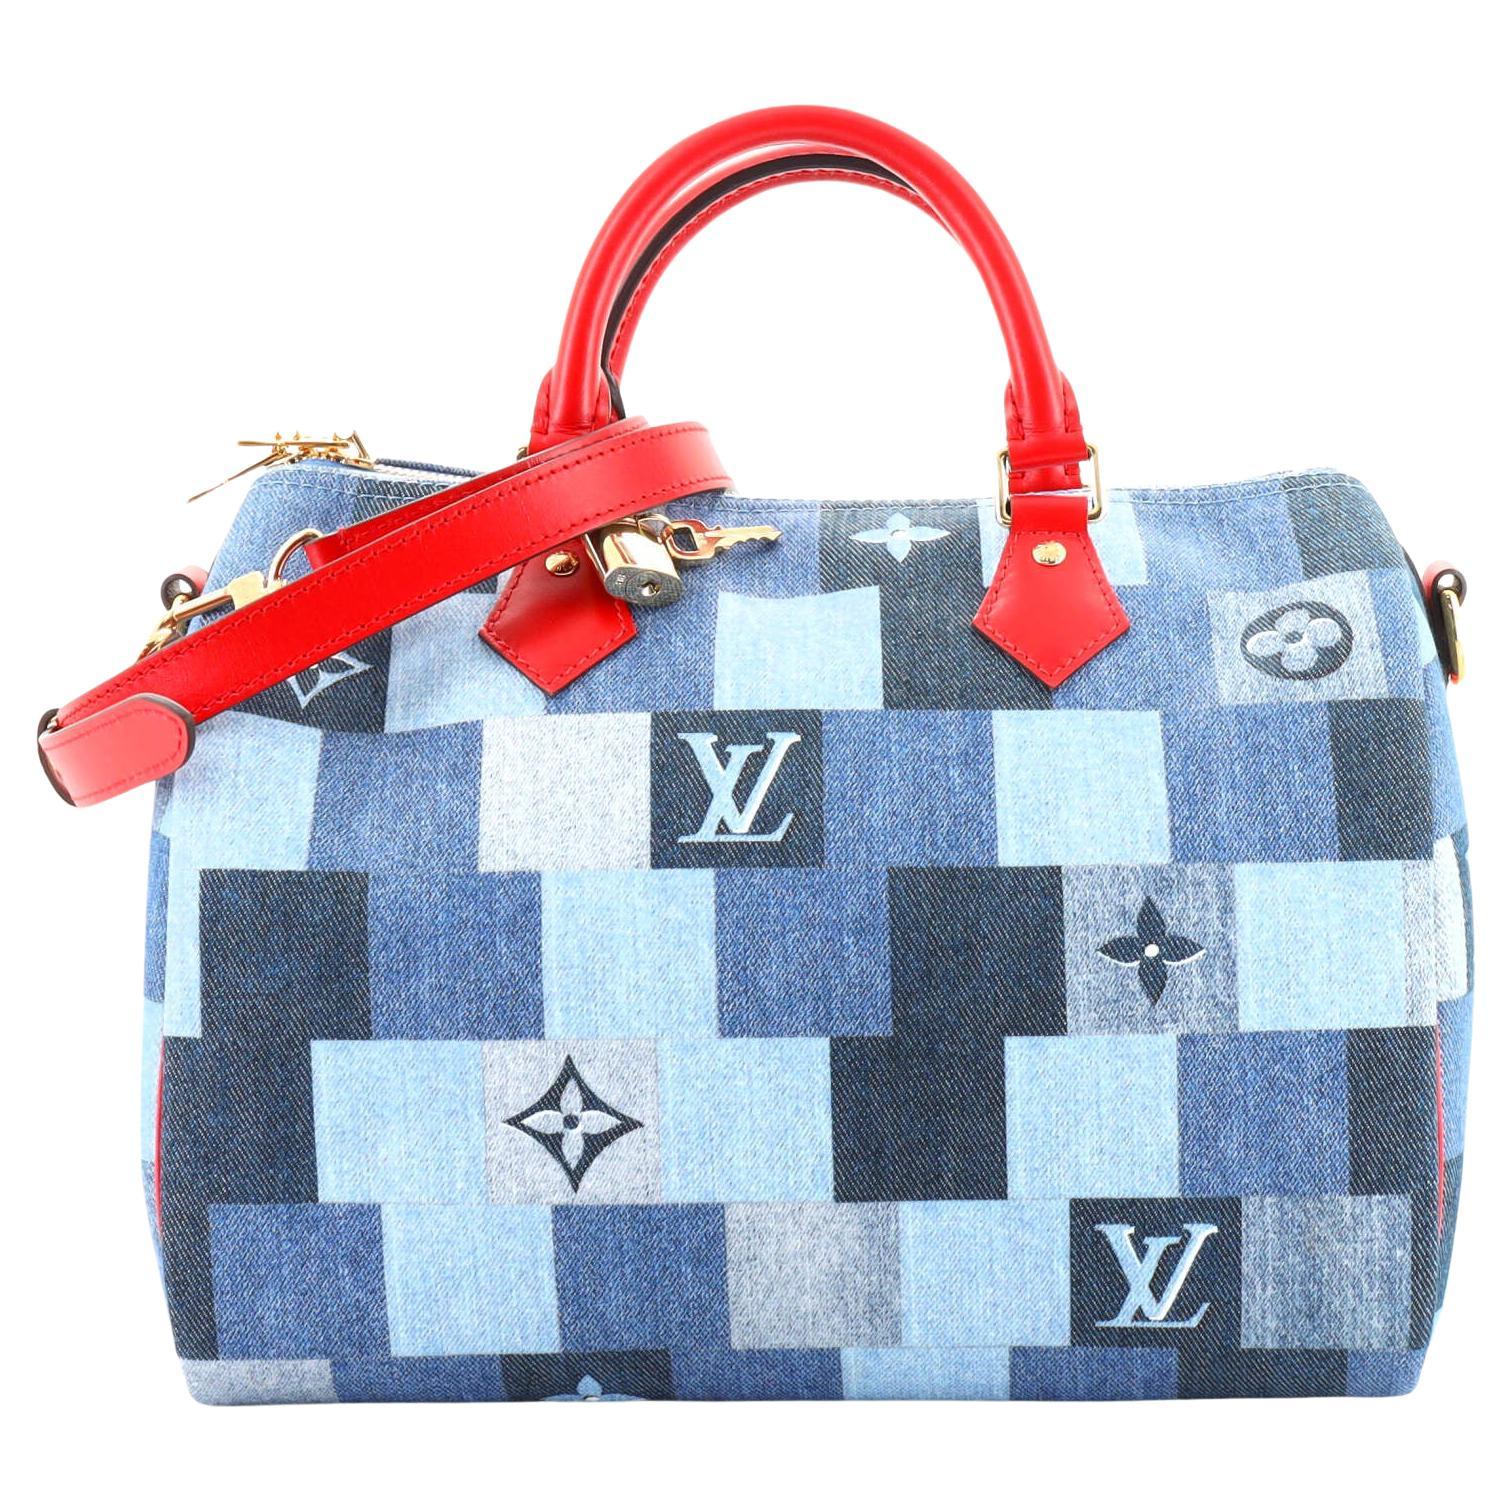 Louis Vuitton Speedy Bandoulière 30 Bag Damier Canvas With Blue Braid -  Praise To Heaven